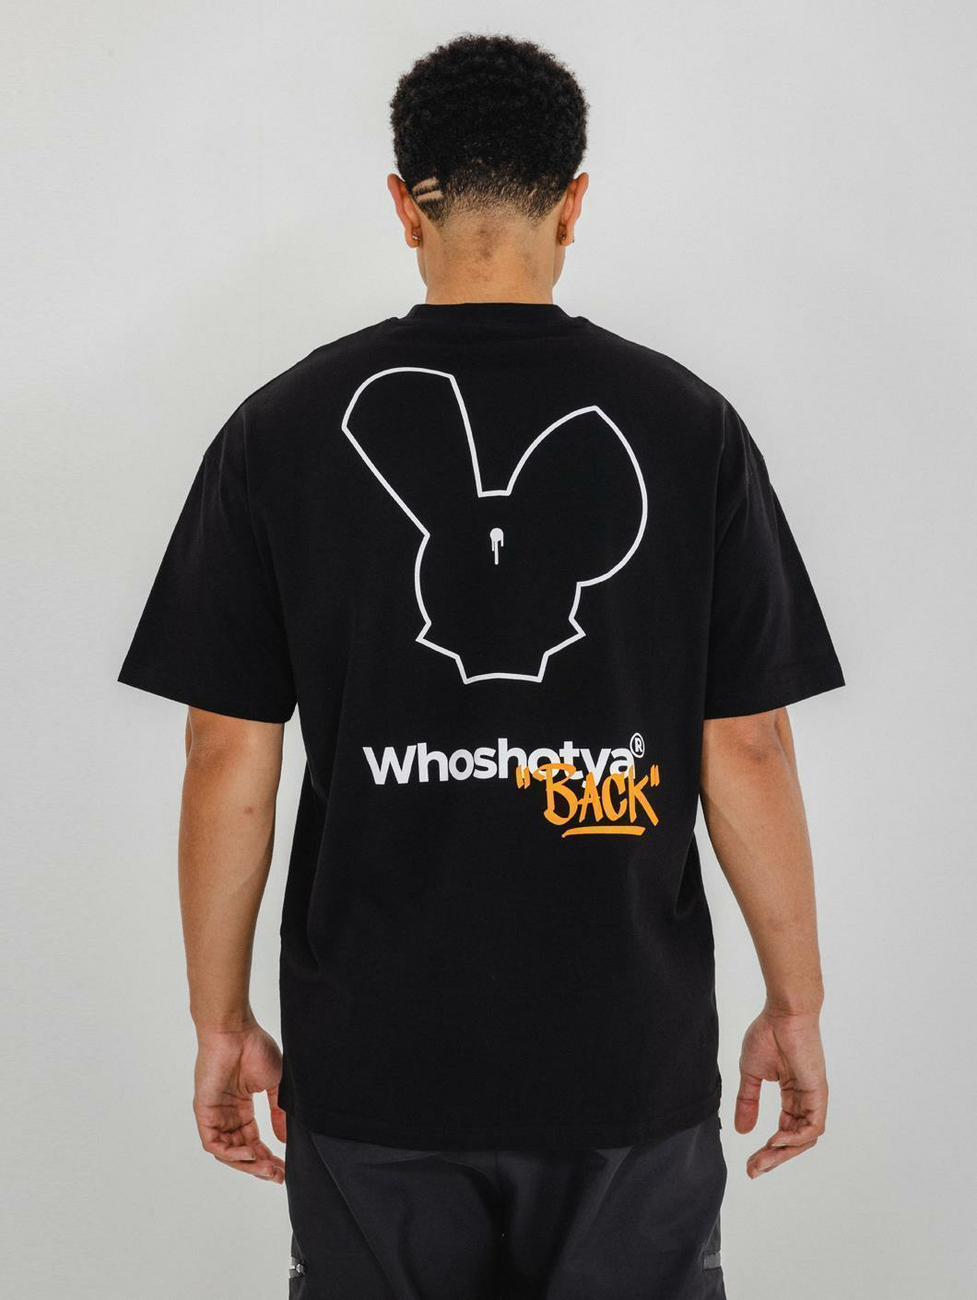 Who Shot Ya Shotyaback T-Shirt 3XL